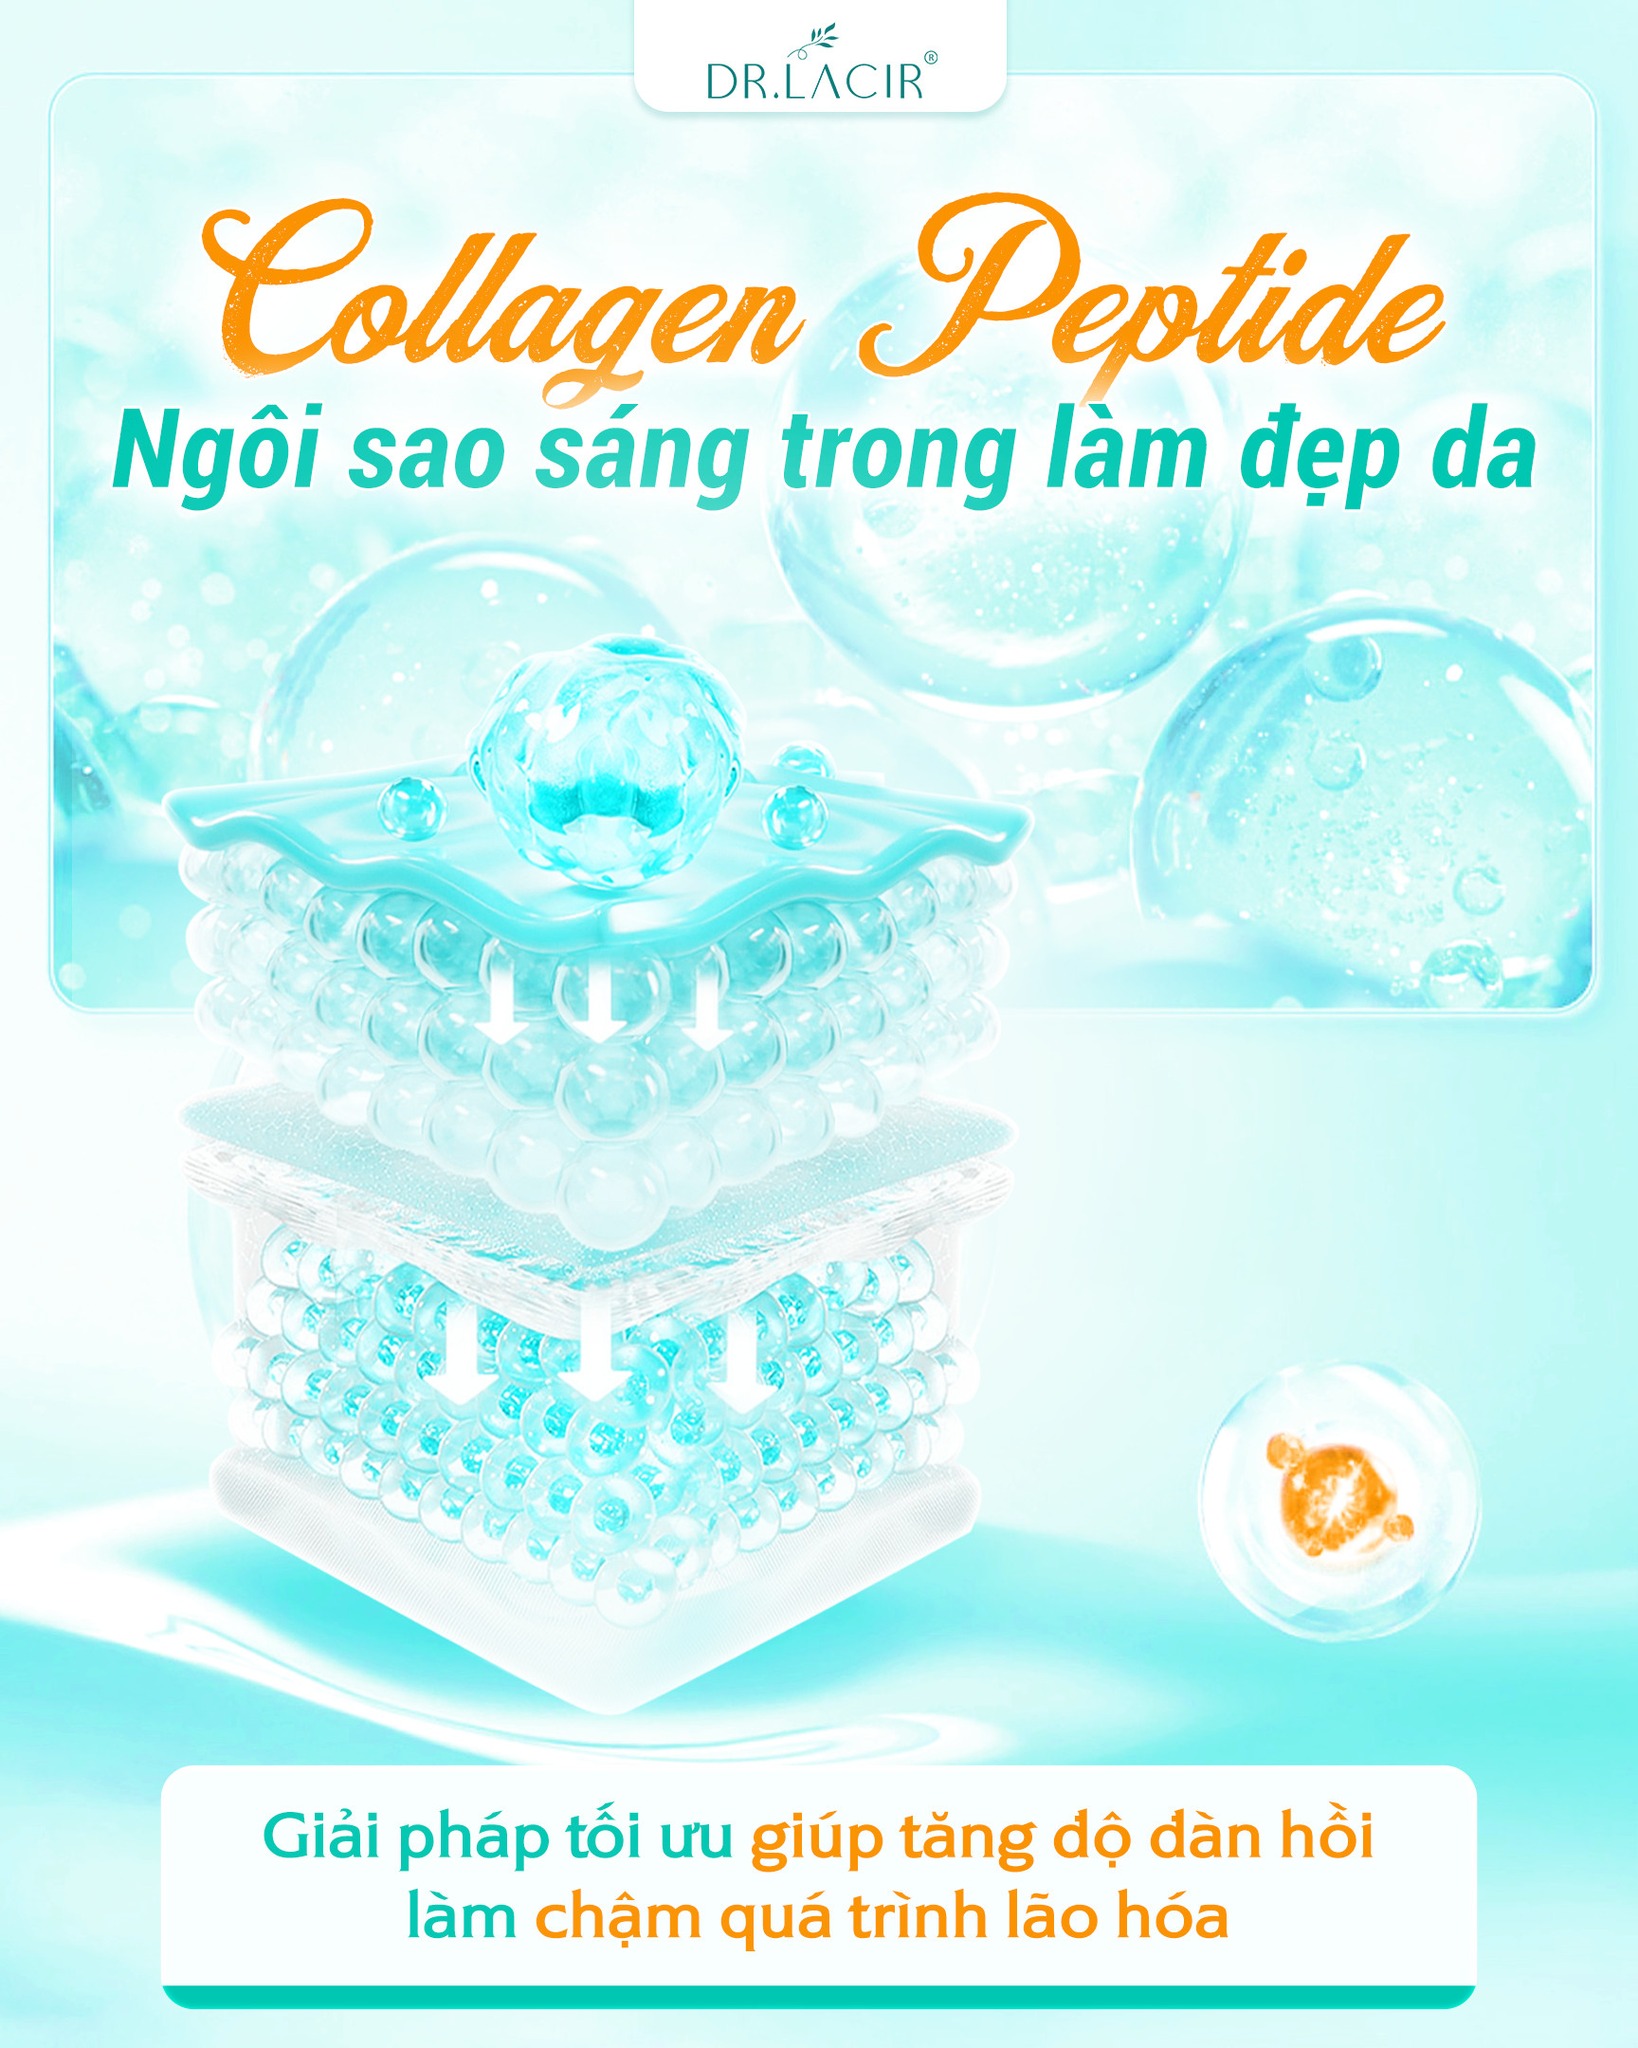 5-giai-ma-khien-collagen-peptide-nhat-ban-tro-thanh-ngoi-sao-trong-lam-dep-da-va-chong-lao-hoa